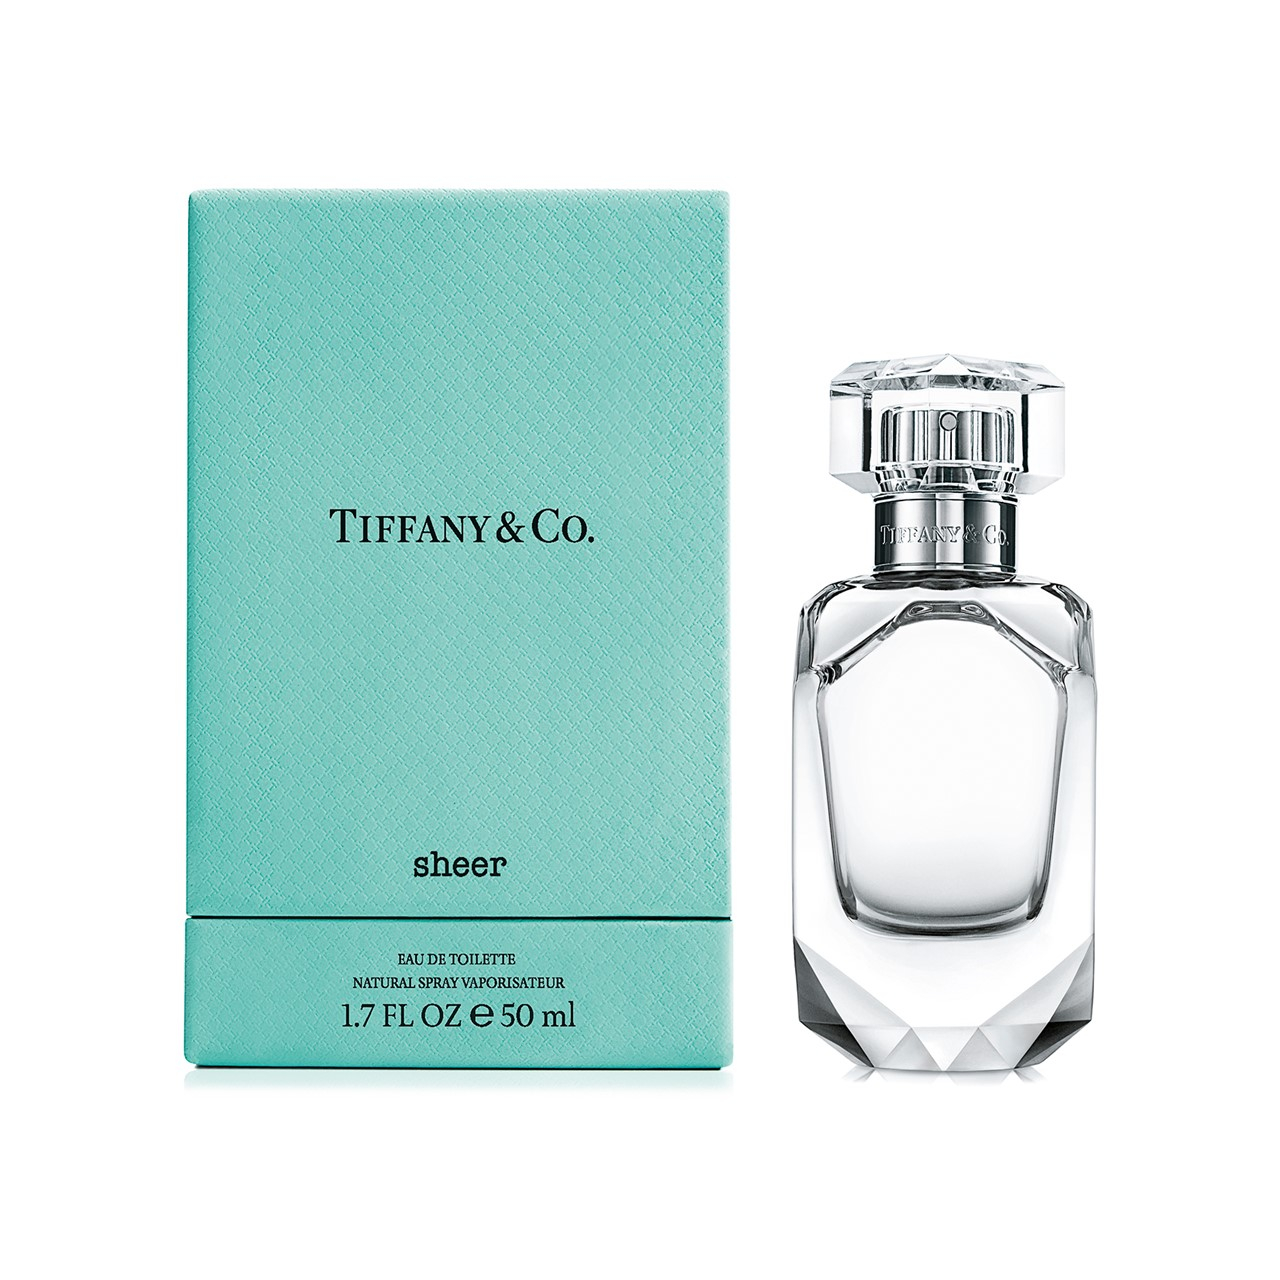 Tiffany & Co. Sheer Eau de Toilette 50ml